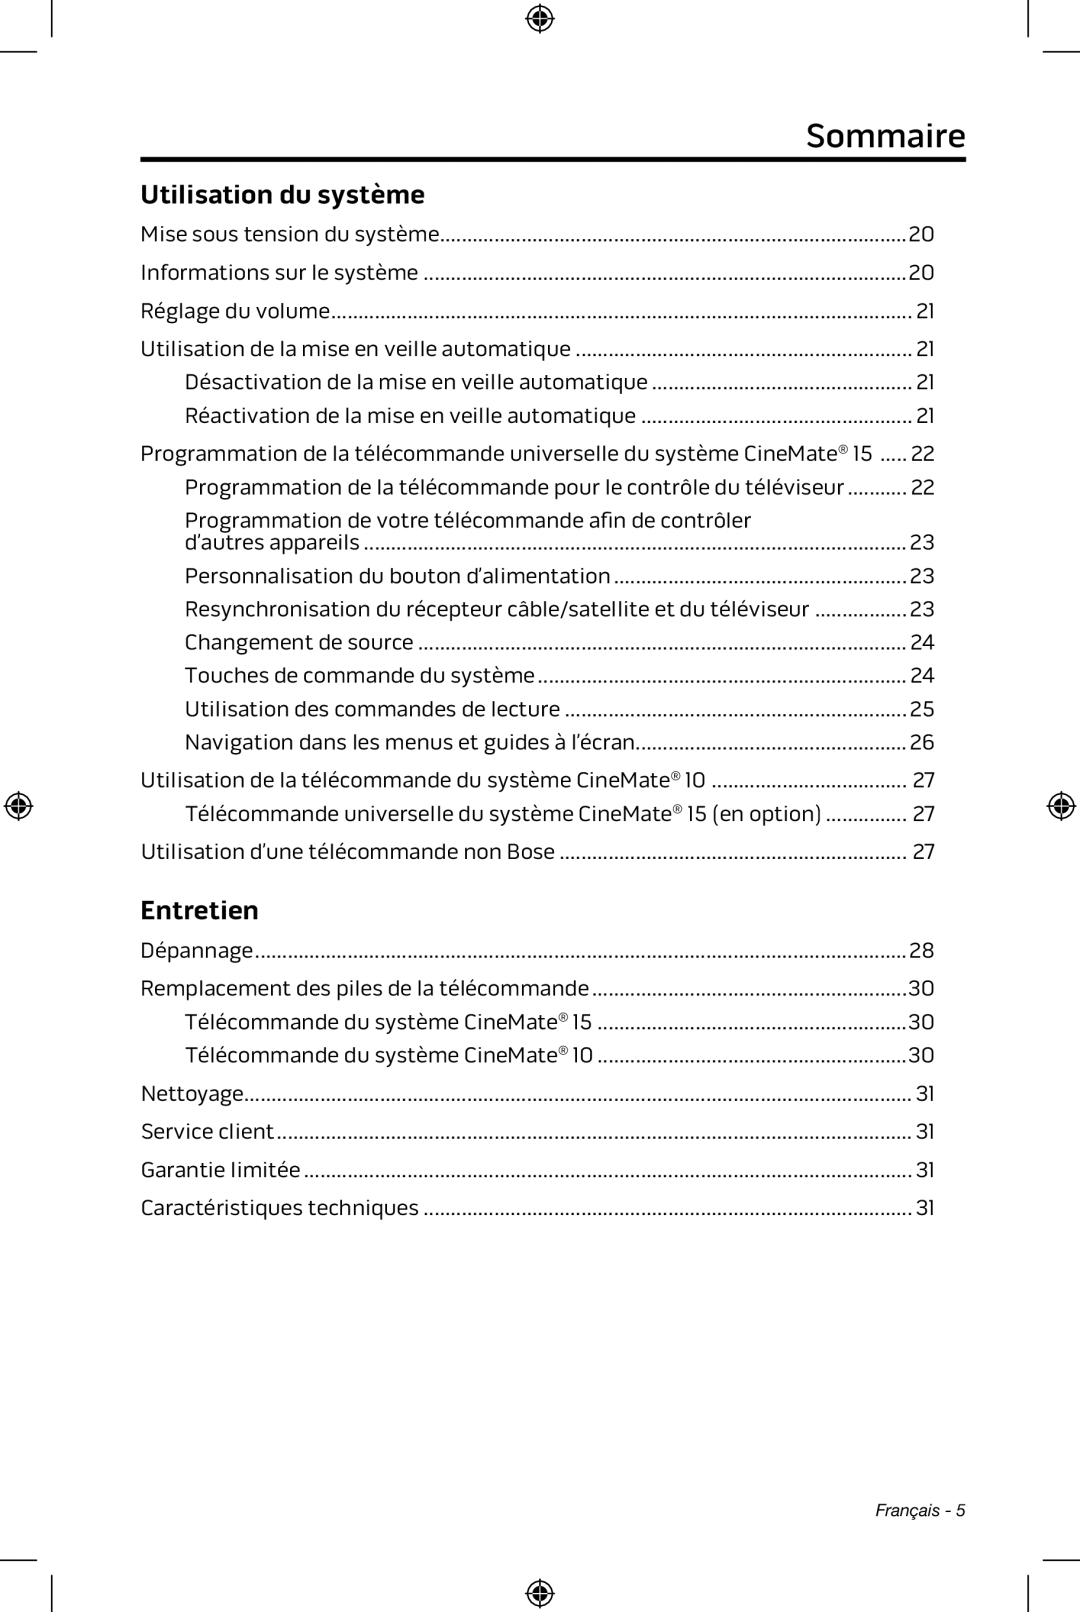 Bose CineMate 15/10 manual Sommaire, Utilisation du système, Entretien 